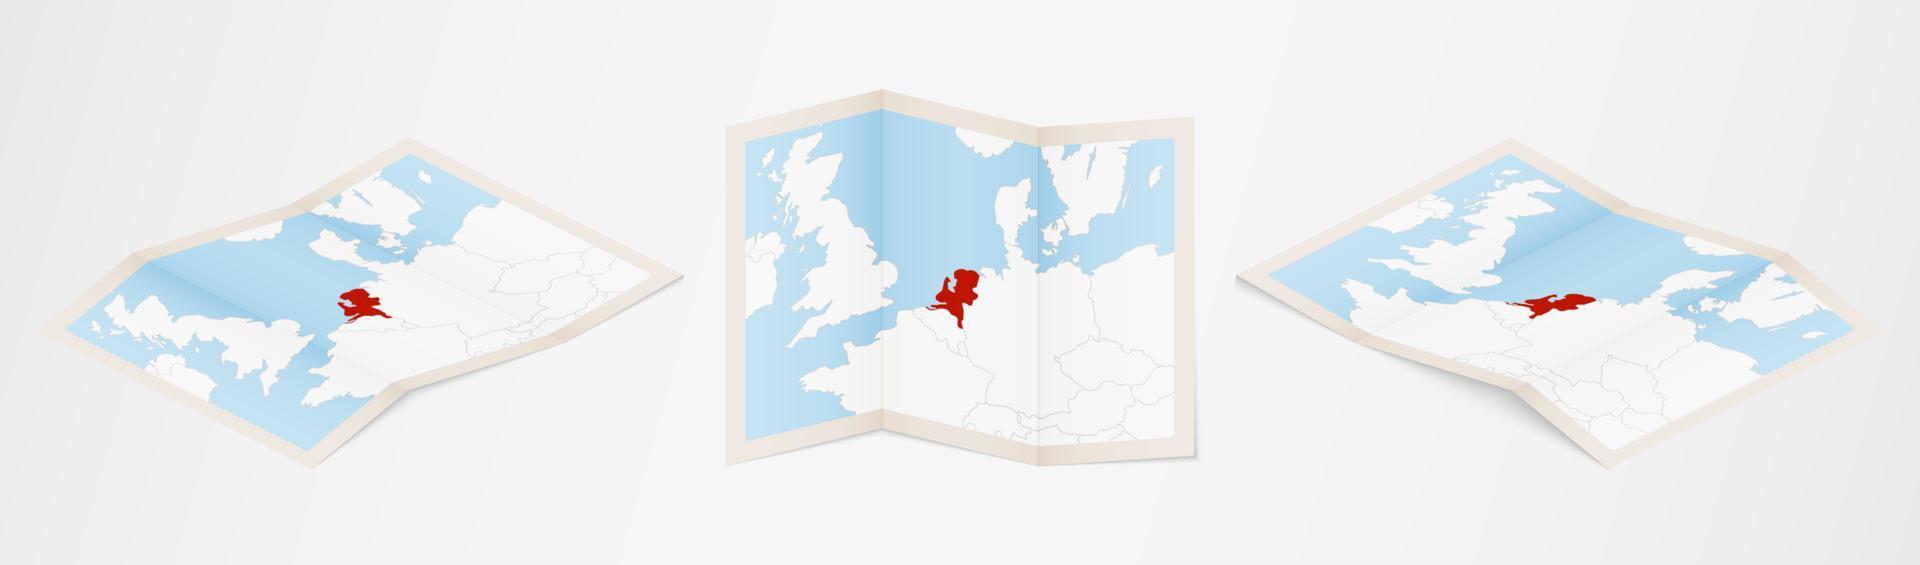 mapa dobrado da Holanda em três versões diferentes. vetor